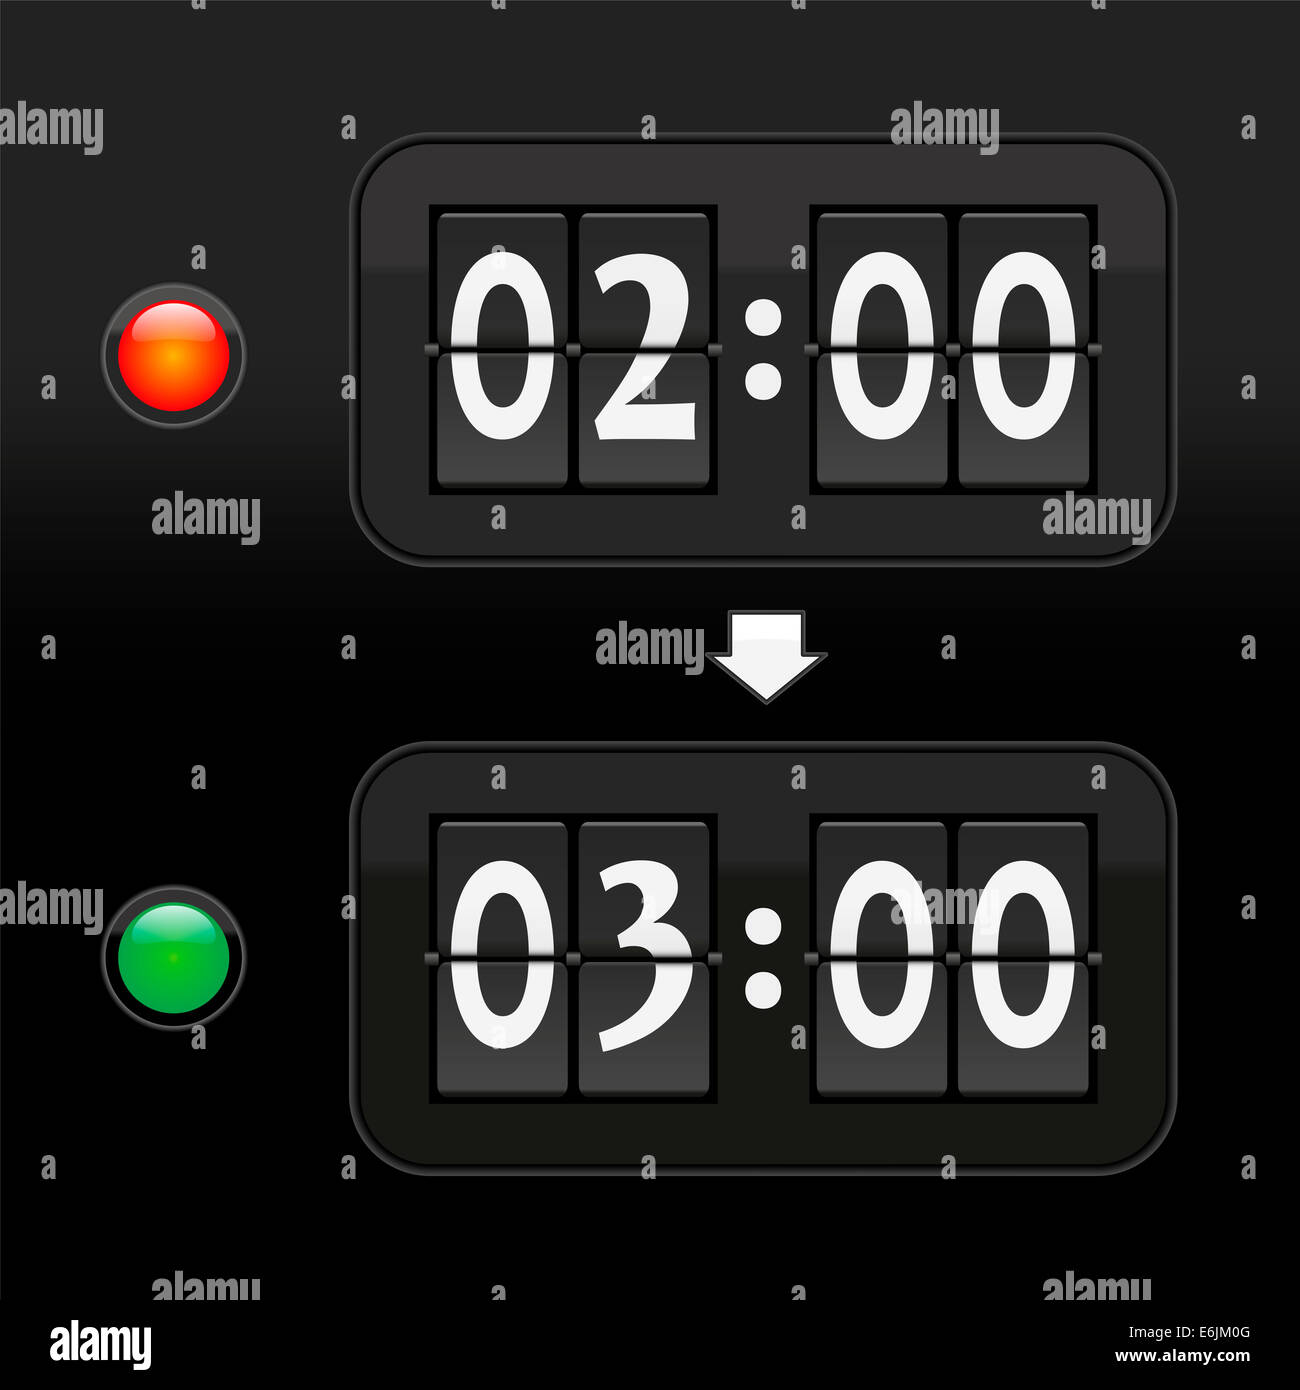 Ponga el reloj una hora adelante al horario de verano en la primavera de dos a tres horas, representado con 2 pantallas de tiempo digital. Foto de stock